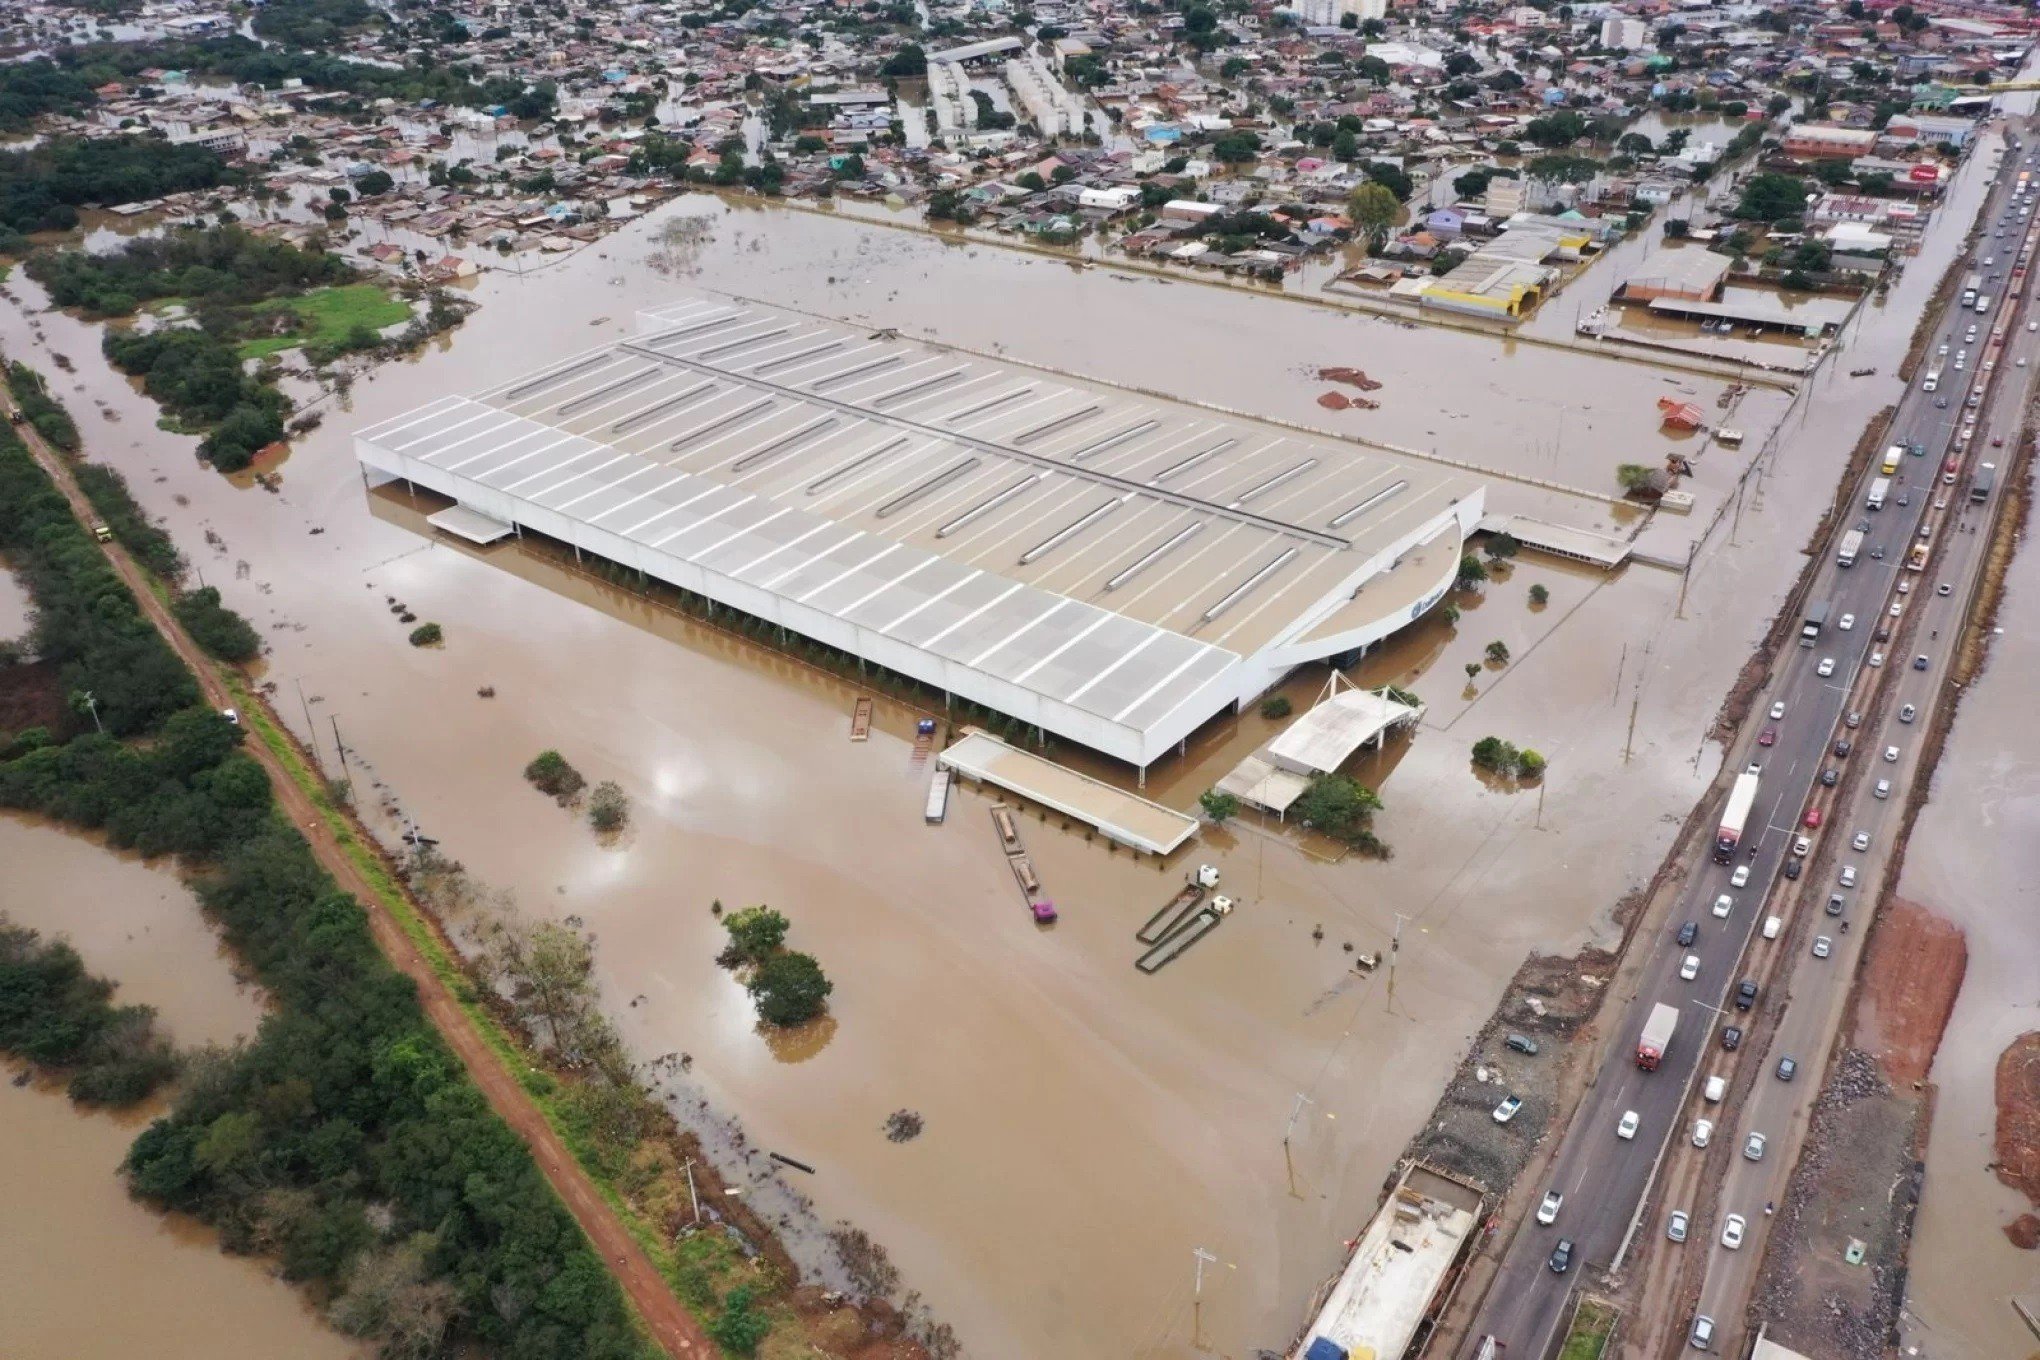 "Empresas vão precisar de ajuda", diz entidade sobre espaços atingidos pela enchente